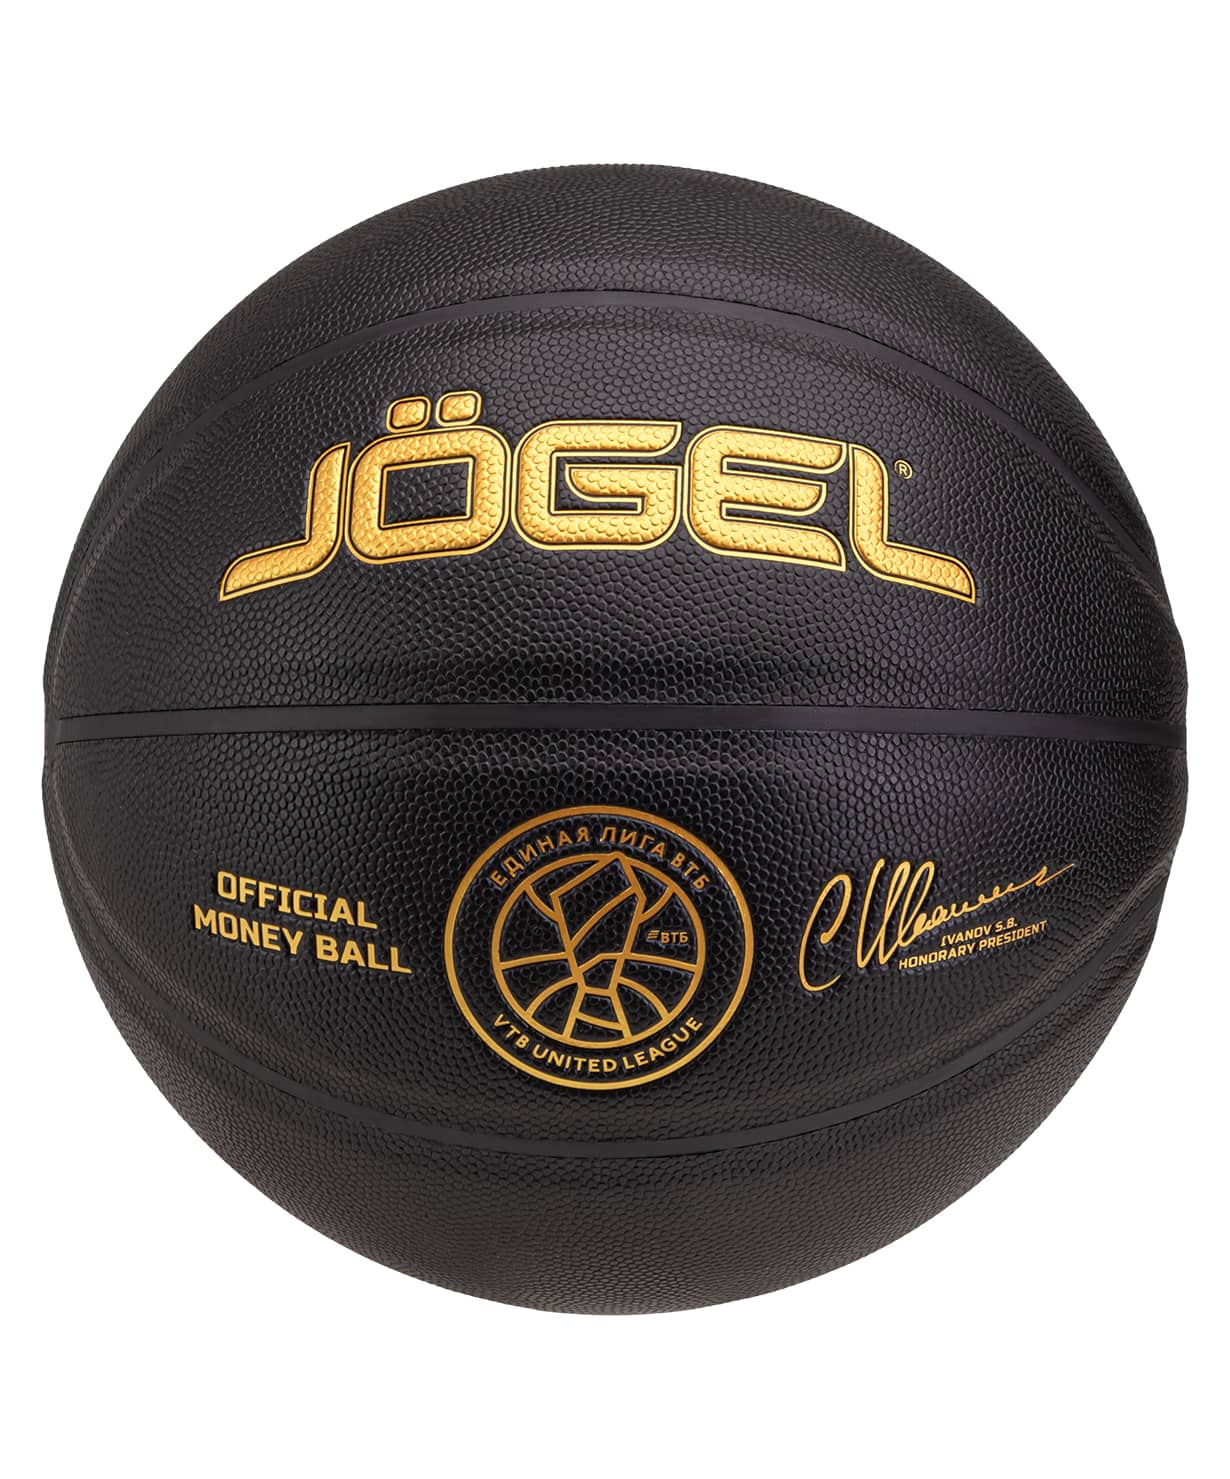   Jogel Money Ball  7